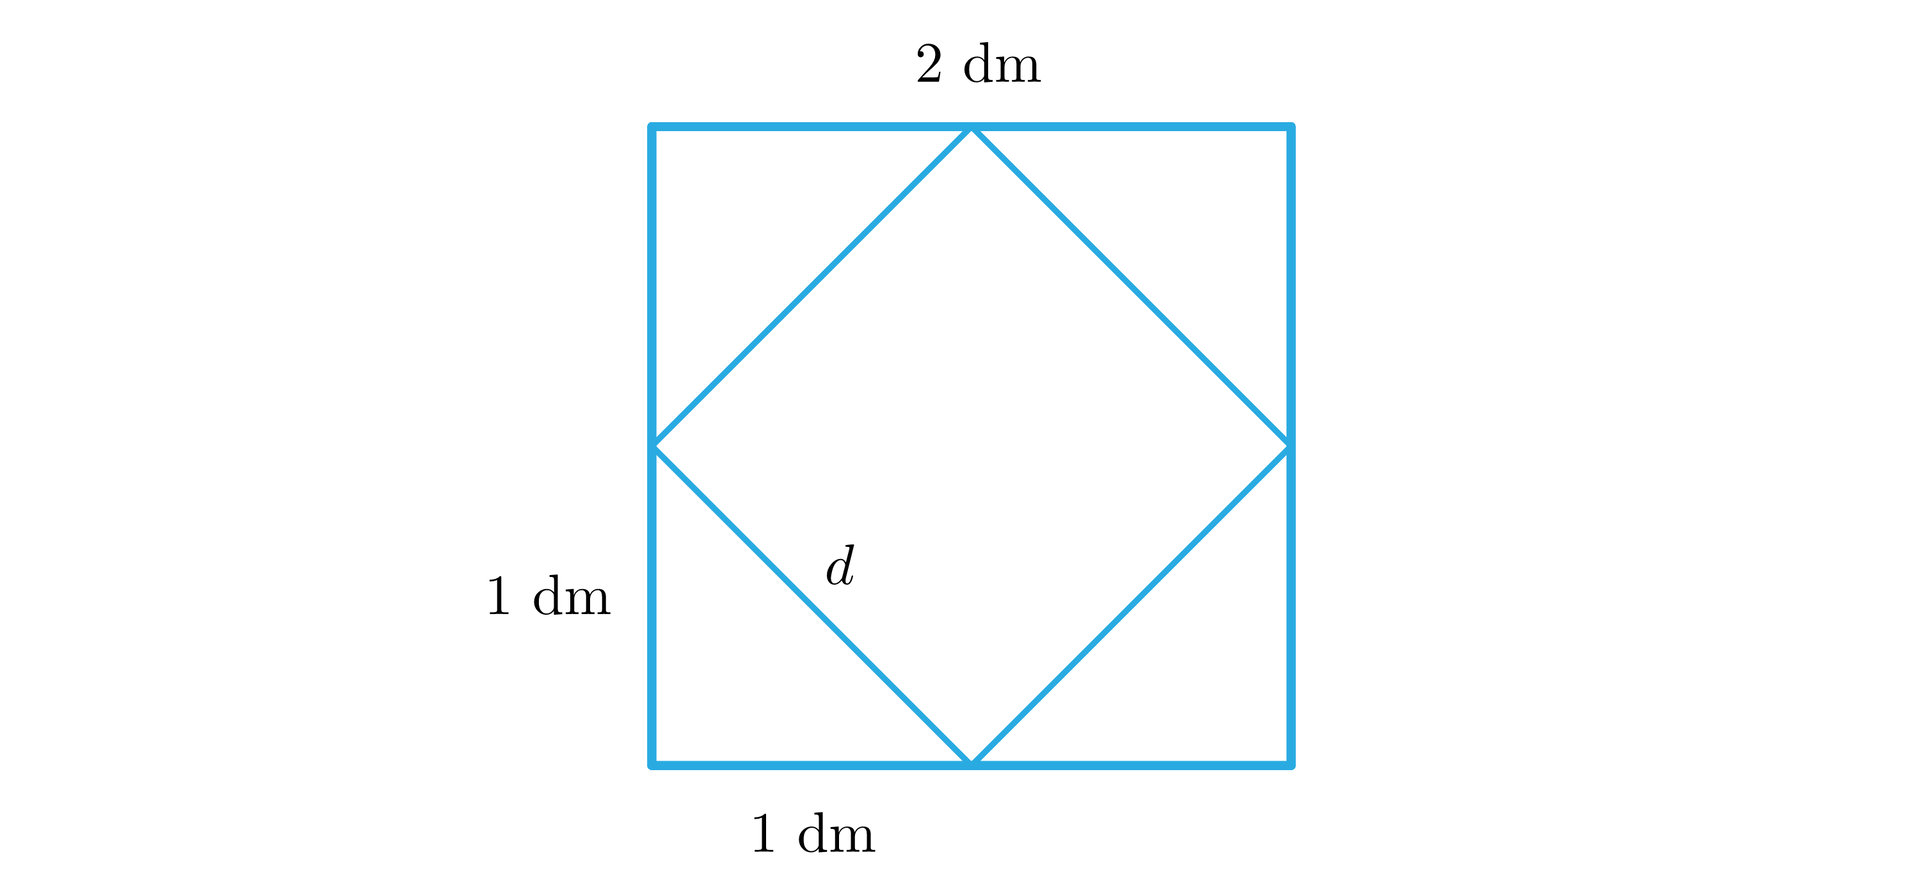 Ilustracja przedstawia kwadrat z zaznaczoną  długością boków równą dwa decymetry. Środki boków kwadratu zostały połączone tworząc nowy kwadrat z oznaczonymi długościami boków poprzez literkę d. 